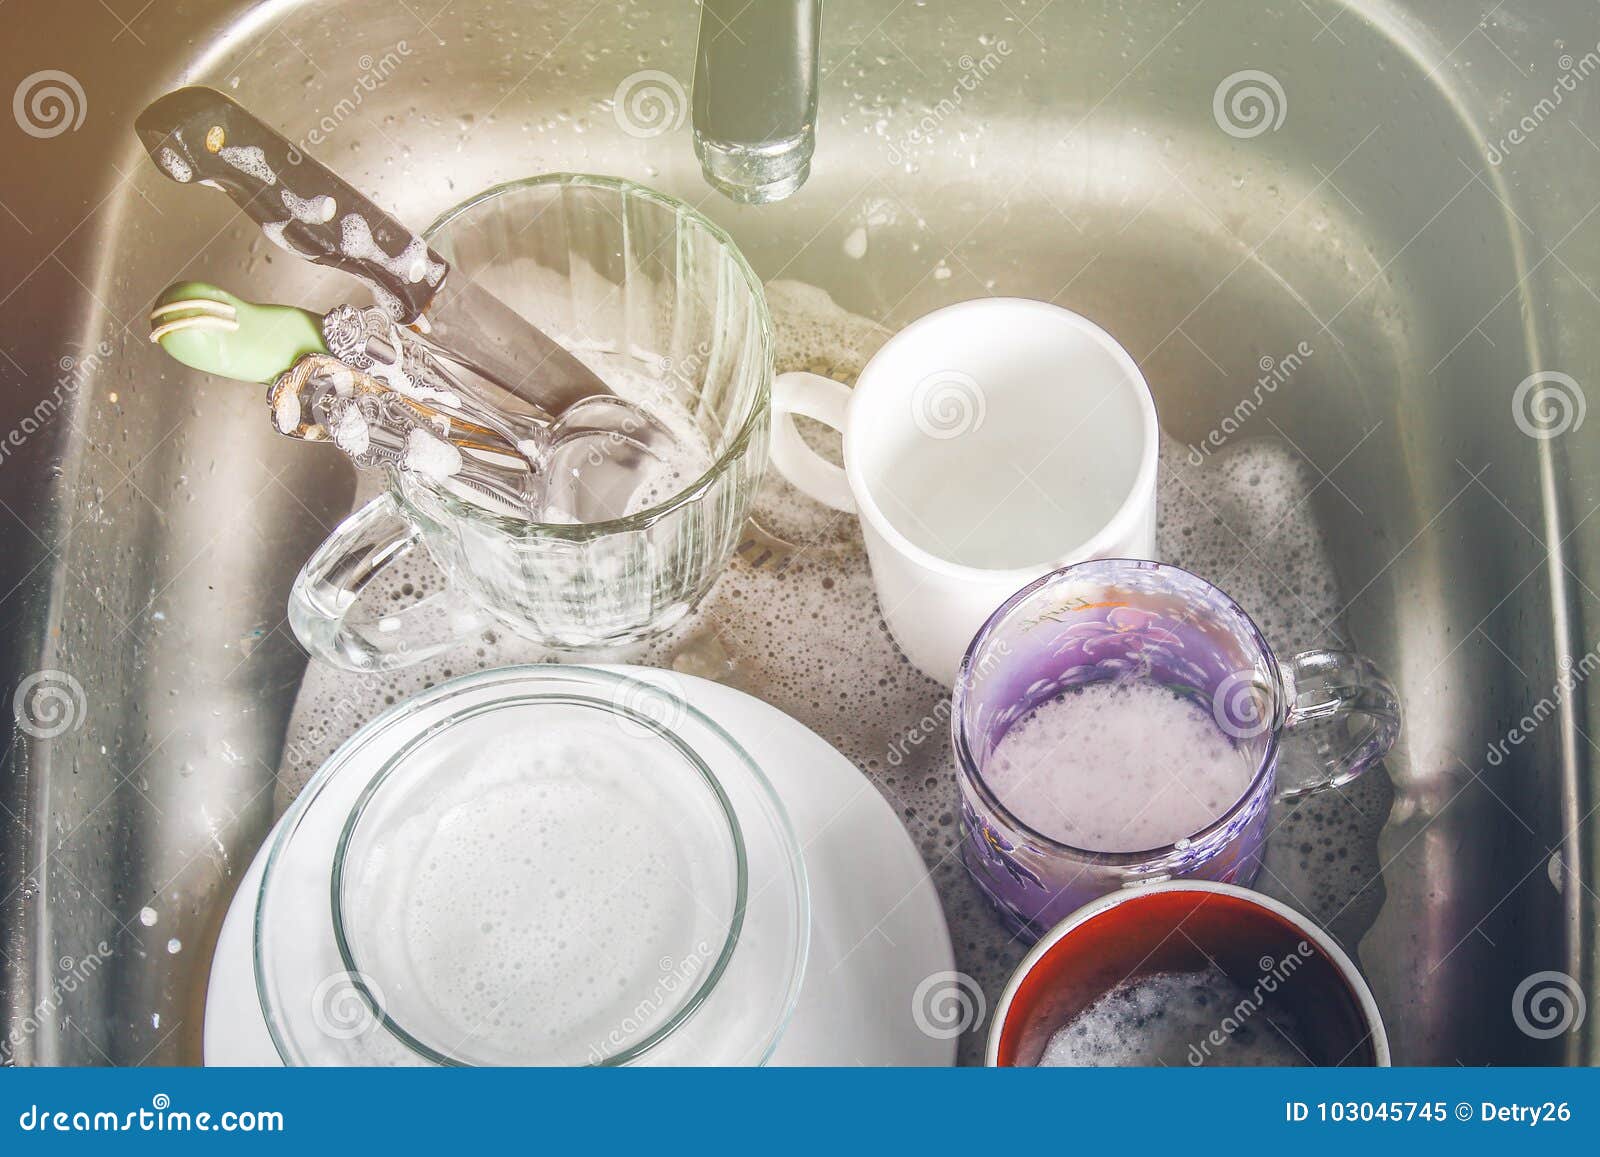 Мыть чужую посуду во сне. Тазик посуда. Грязная посуда в тазу. Тазик с грязной посудой. Грязная посуда в мыльной воде.